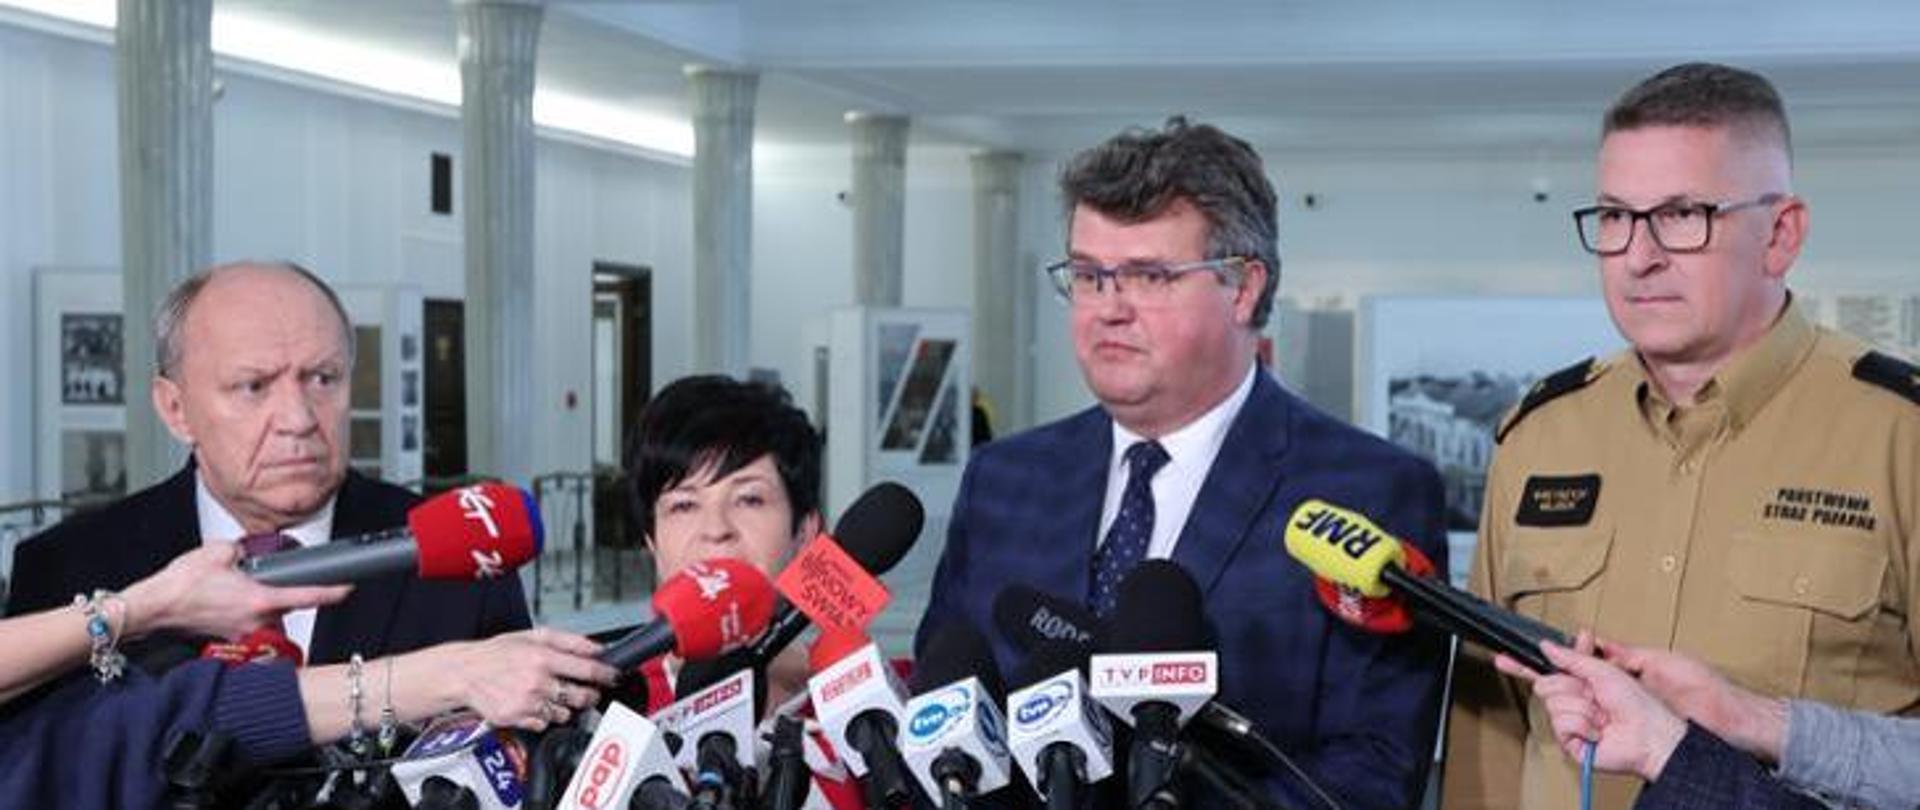 Na zdjęciu widać ministra Macieja Wąsika z zastępcą Komendanta Głównego PSP nadbryg. Krzysztofem Hejdukiem oraz posłami podczas konferencji prasowej 